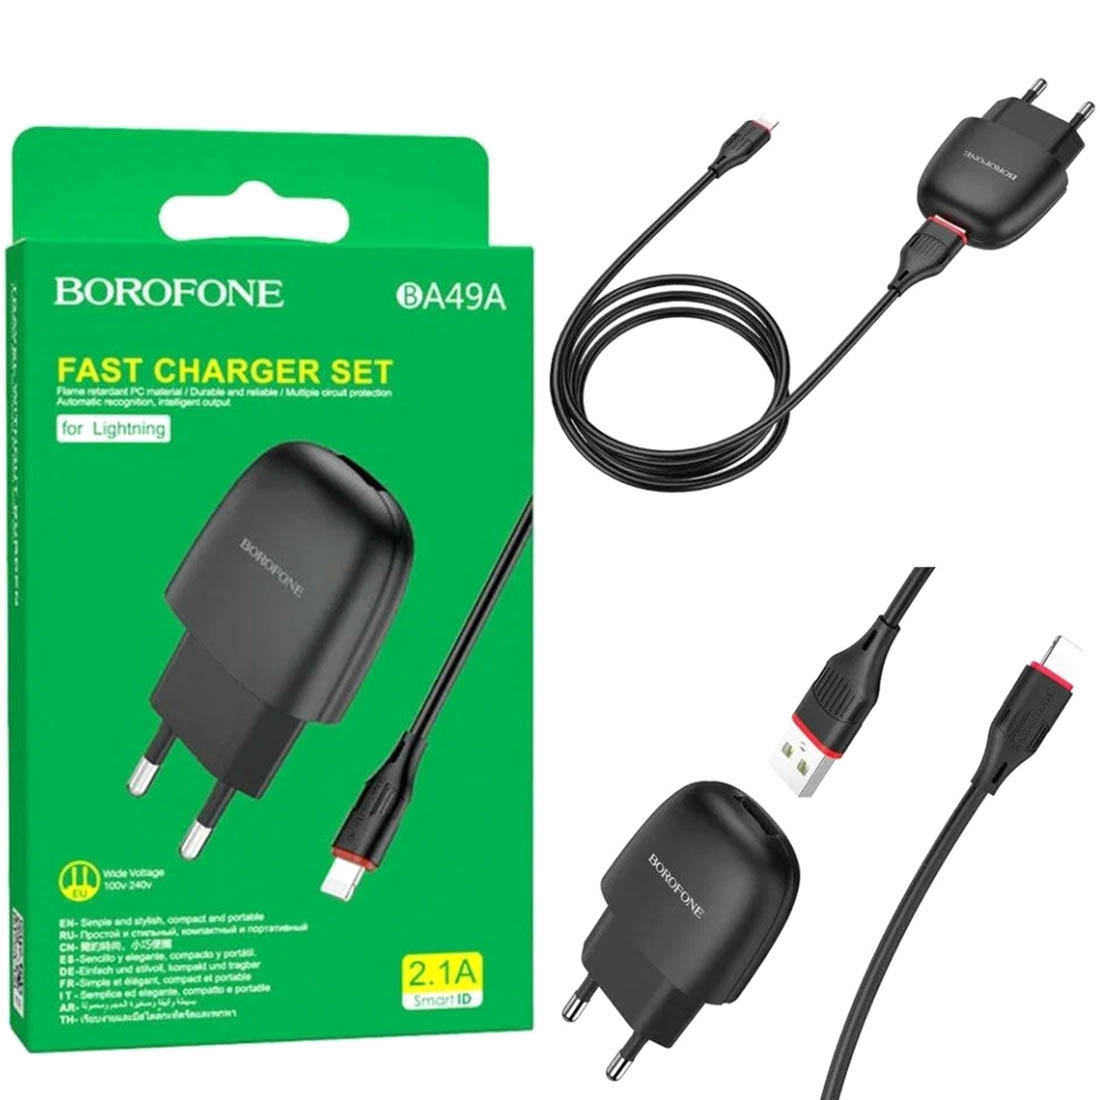 СЗУ (Сетевое зарядное устройство) BOROFONE BA49A Vast Power с кабелем Lightning 8 pin, 2.1A, 1 USB, длина 1 метр, цвет черный